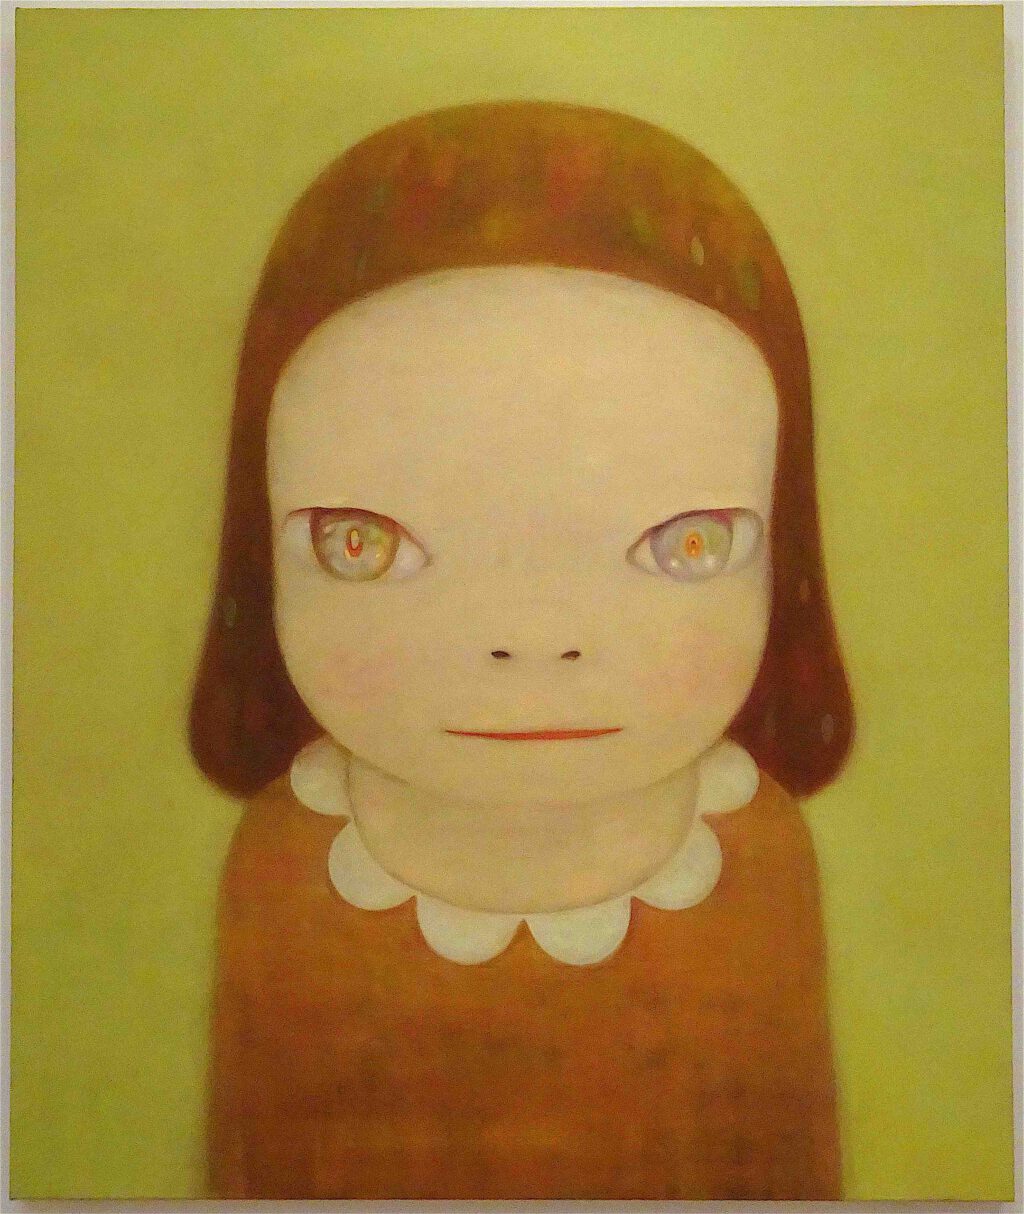 奈良美智 NARA Yoshitomo Miss Margaret 2016. Acrylic on canvas, 194 x 162 cm. The Rachofsky Collection